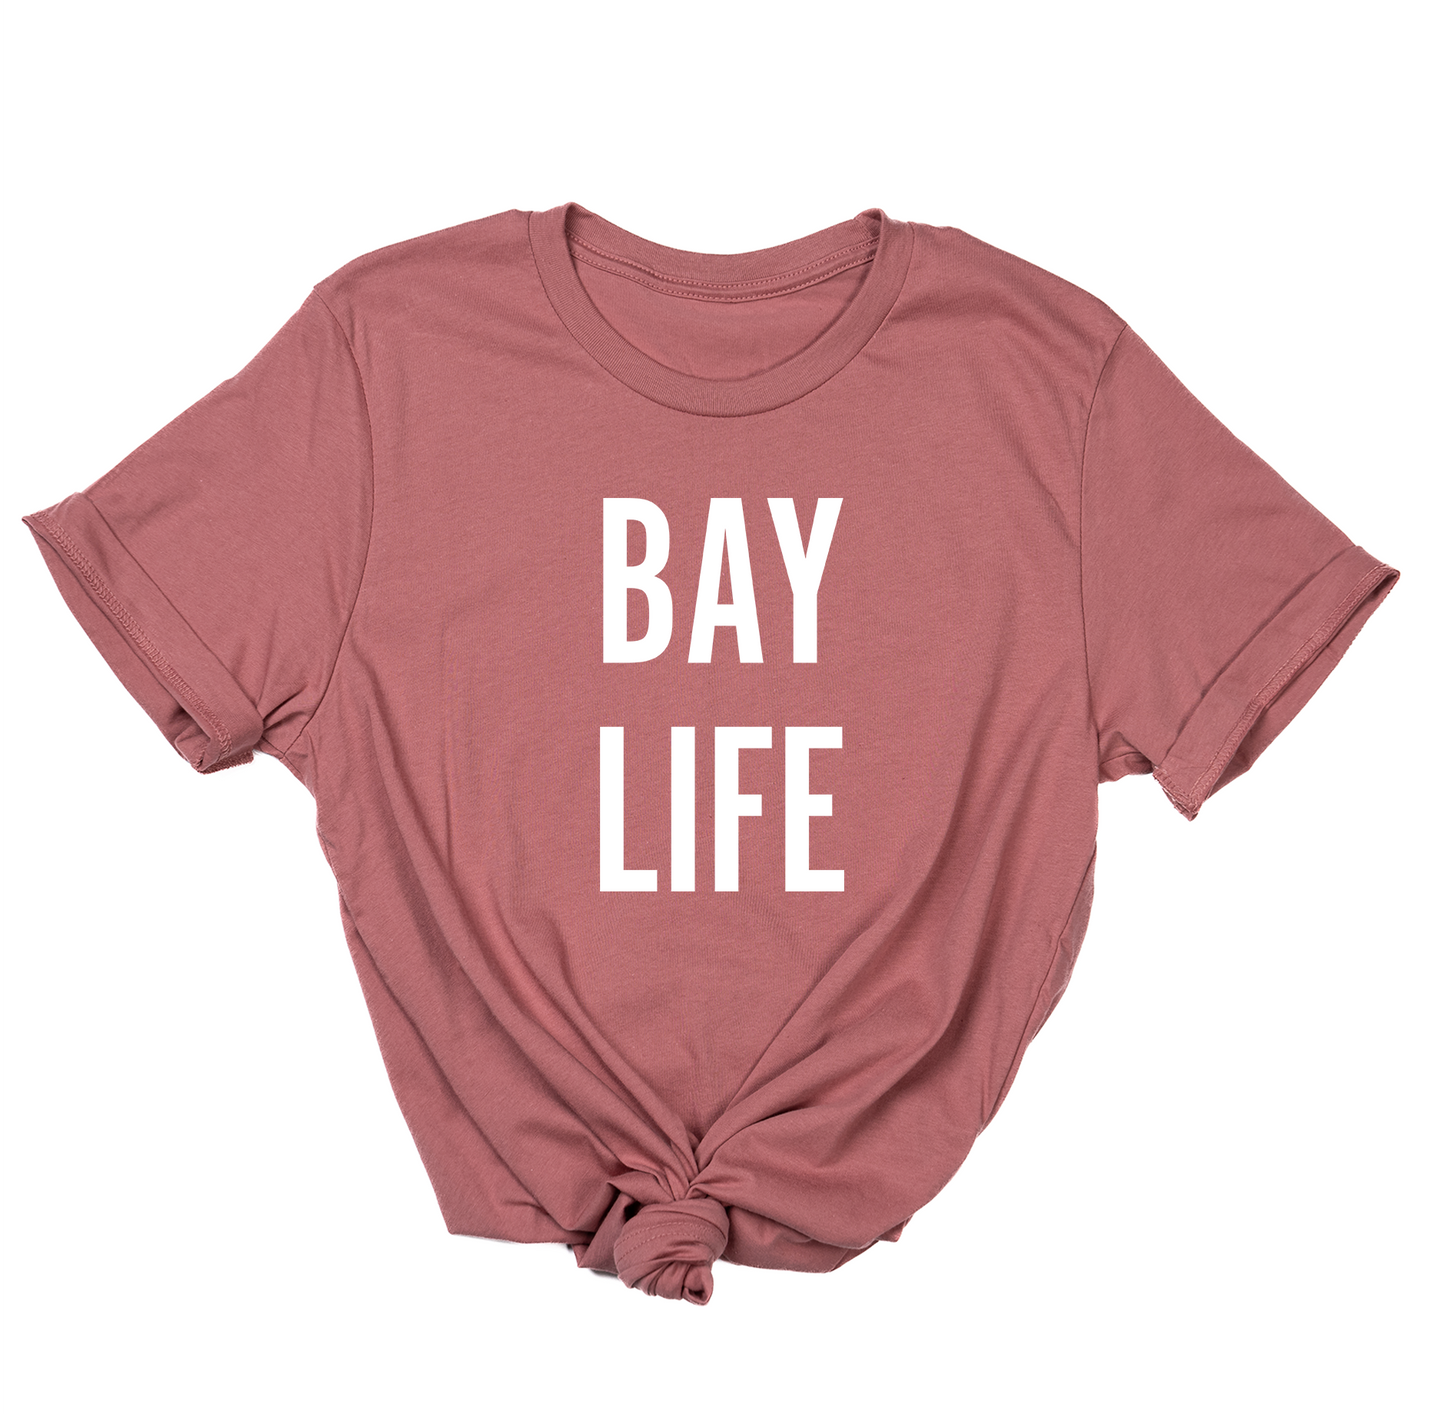 Bay Life (White) - Tee (Mauve)